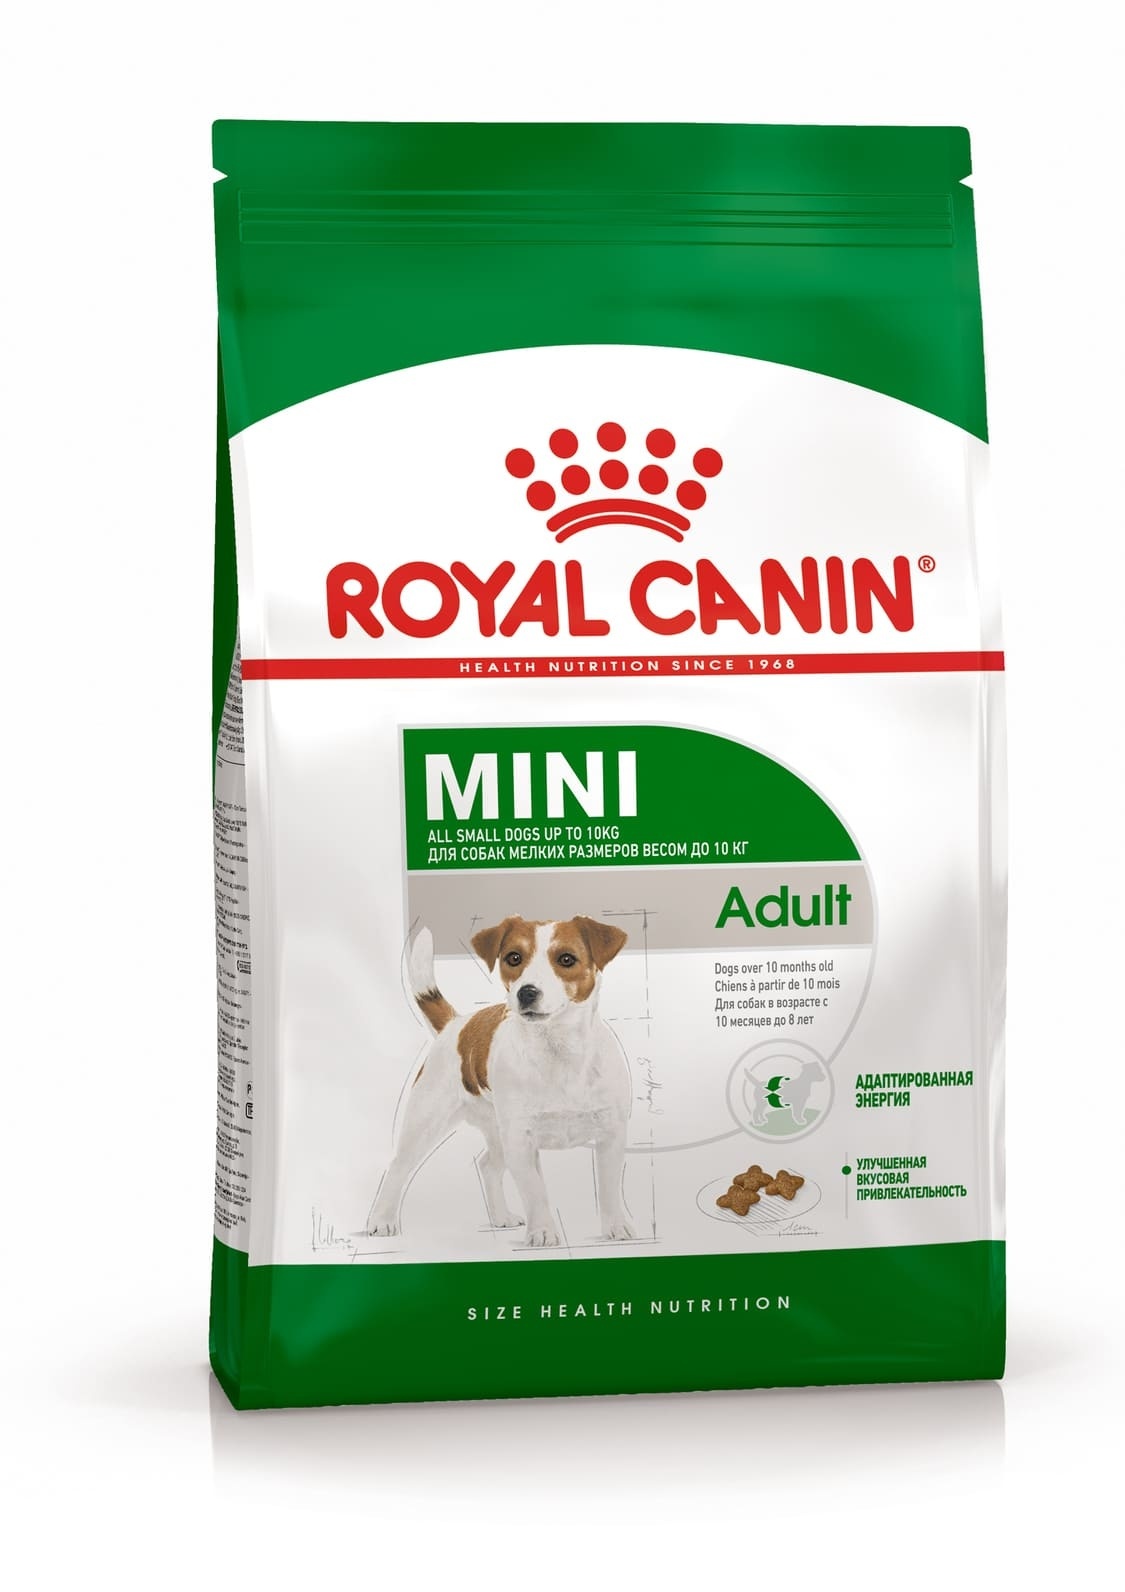 Royal Canin Корм Royal Canin корм для взрослых собак малых пород: до 10 кг, с 10 месяцев до 8 лет (8 кг) сухой корм для собак мелких пород royal canin mini adult 2 кг